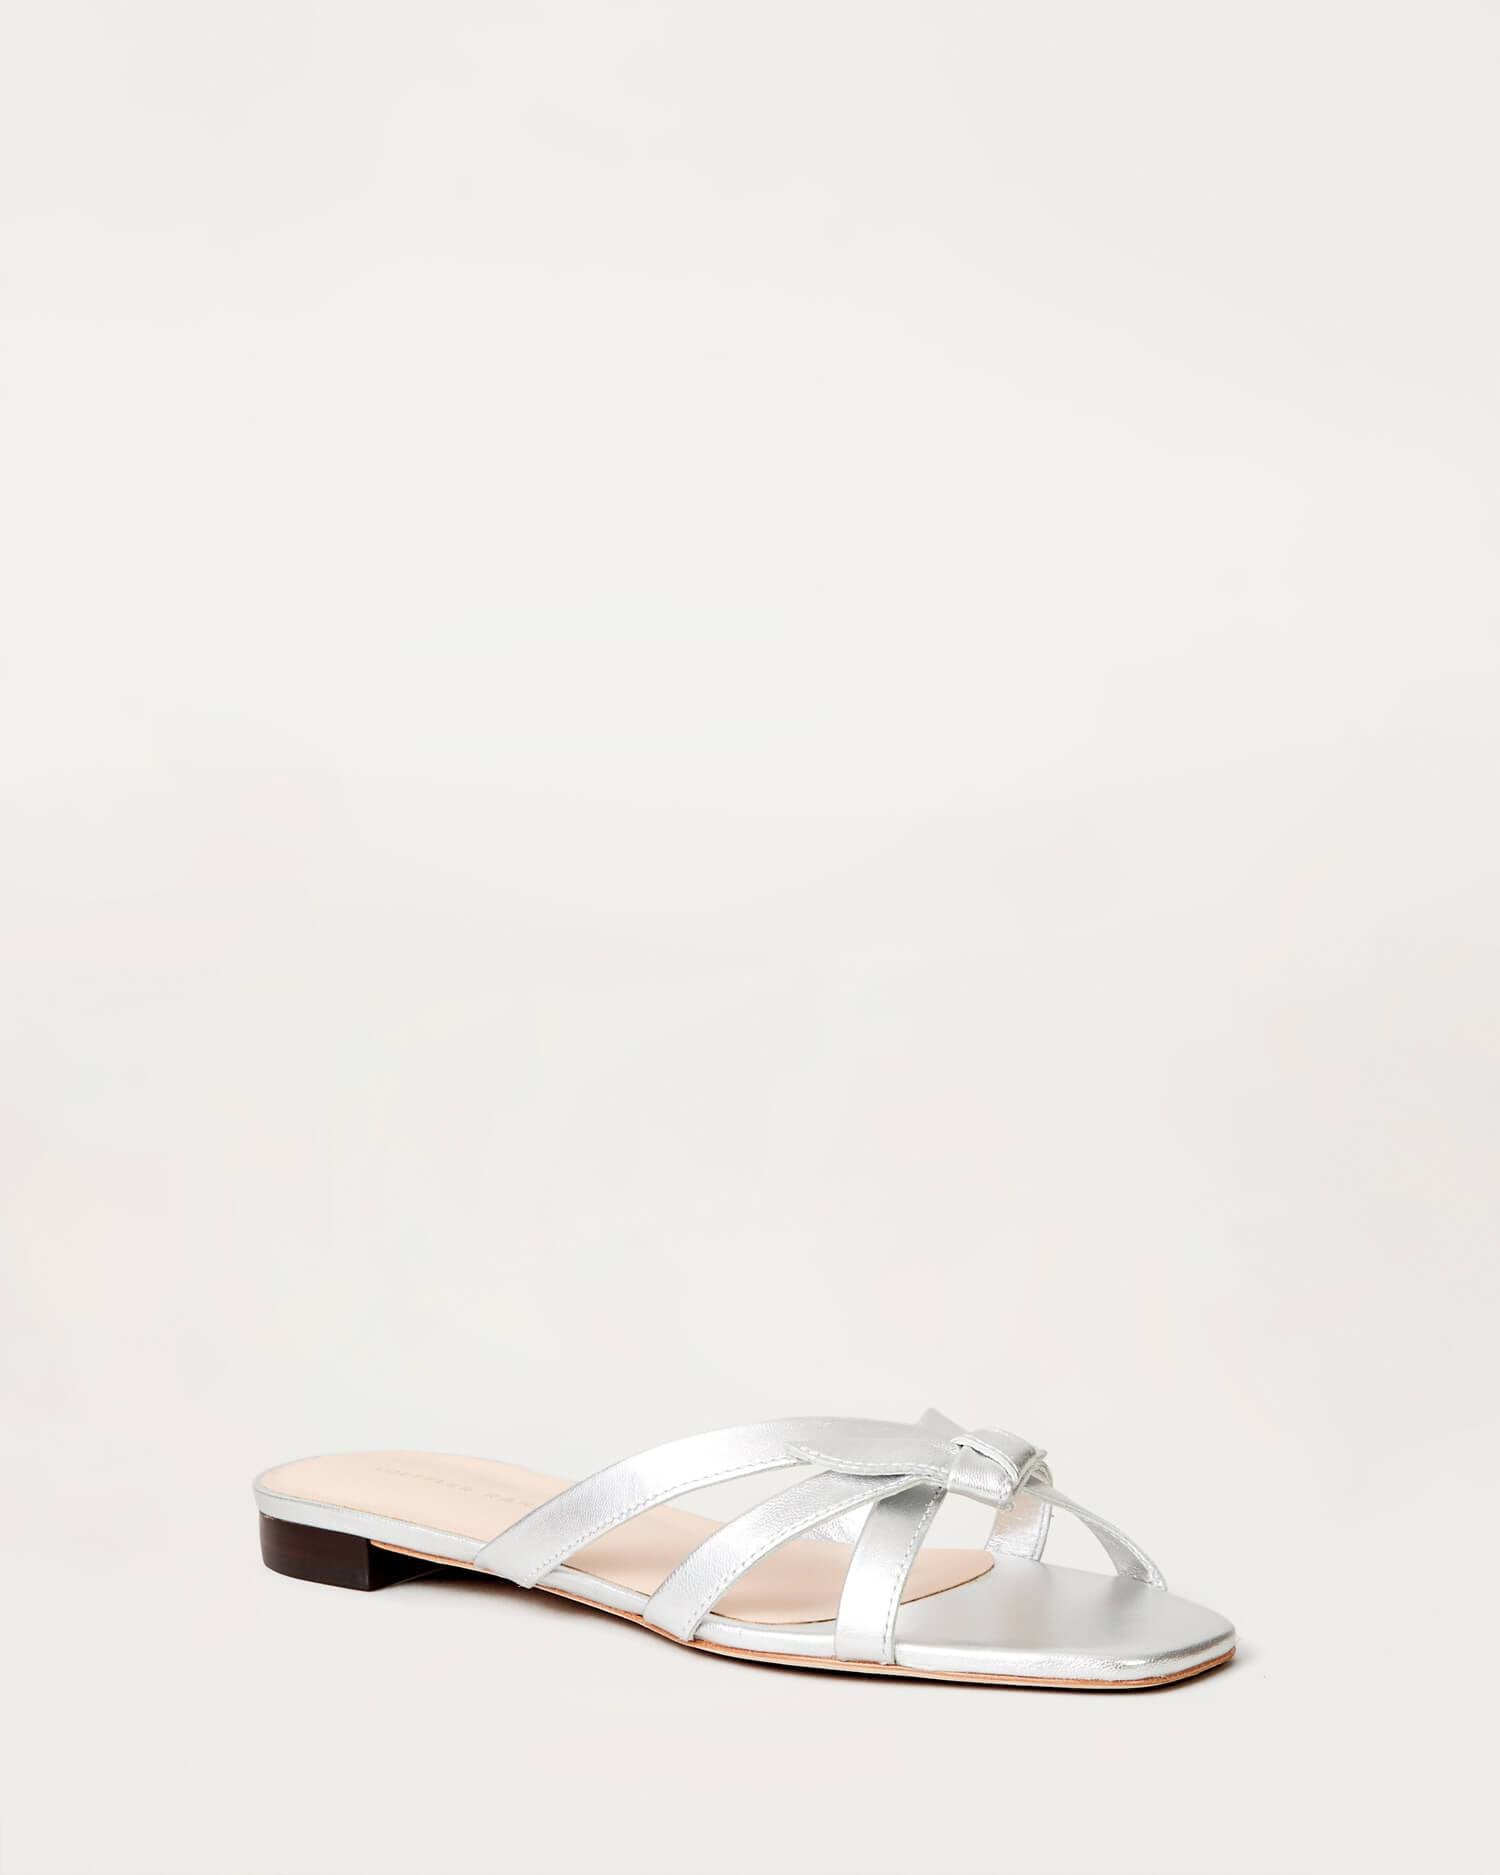 loeffler randall silver shoes